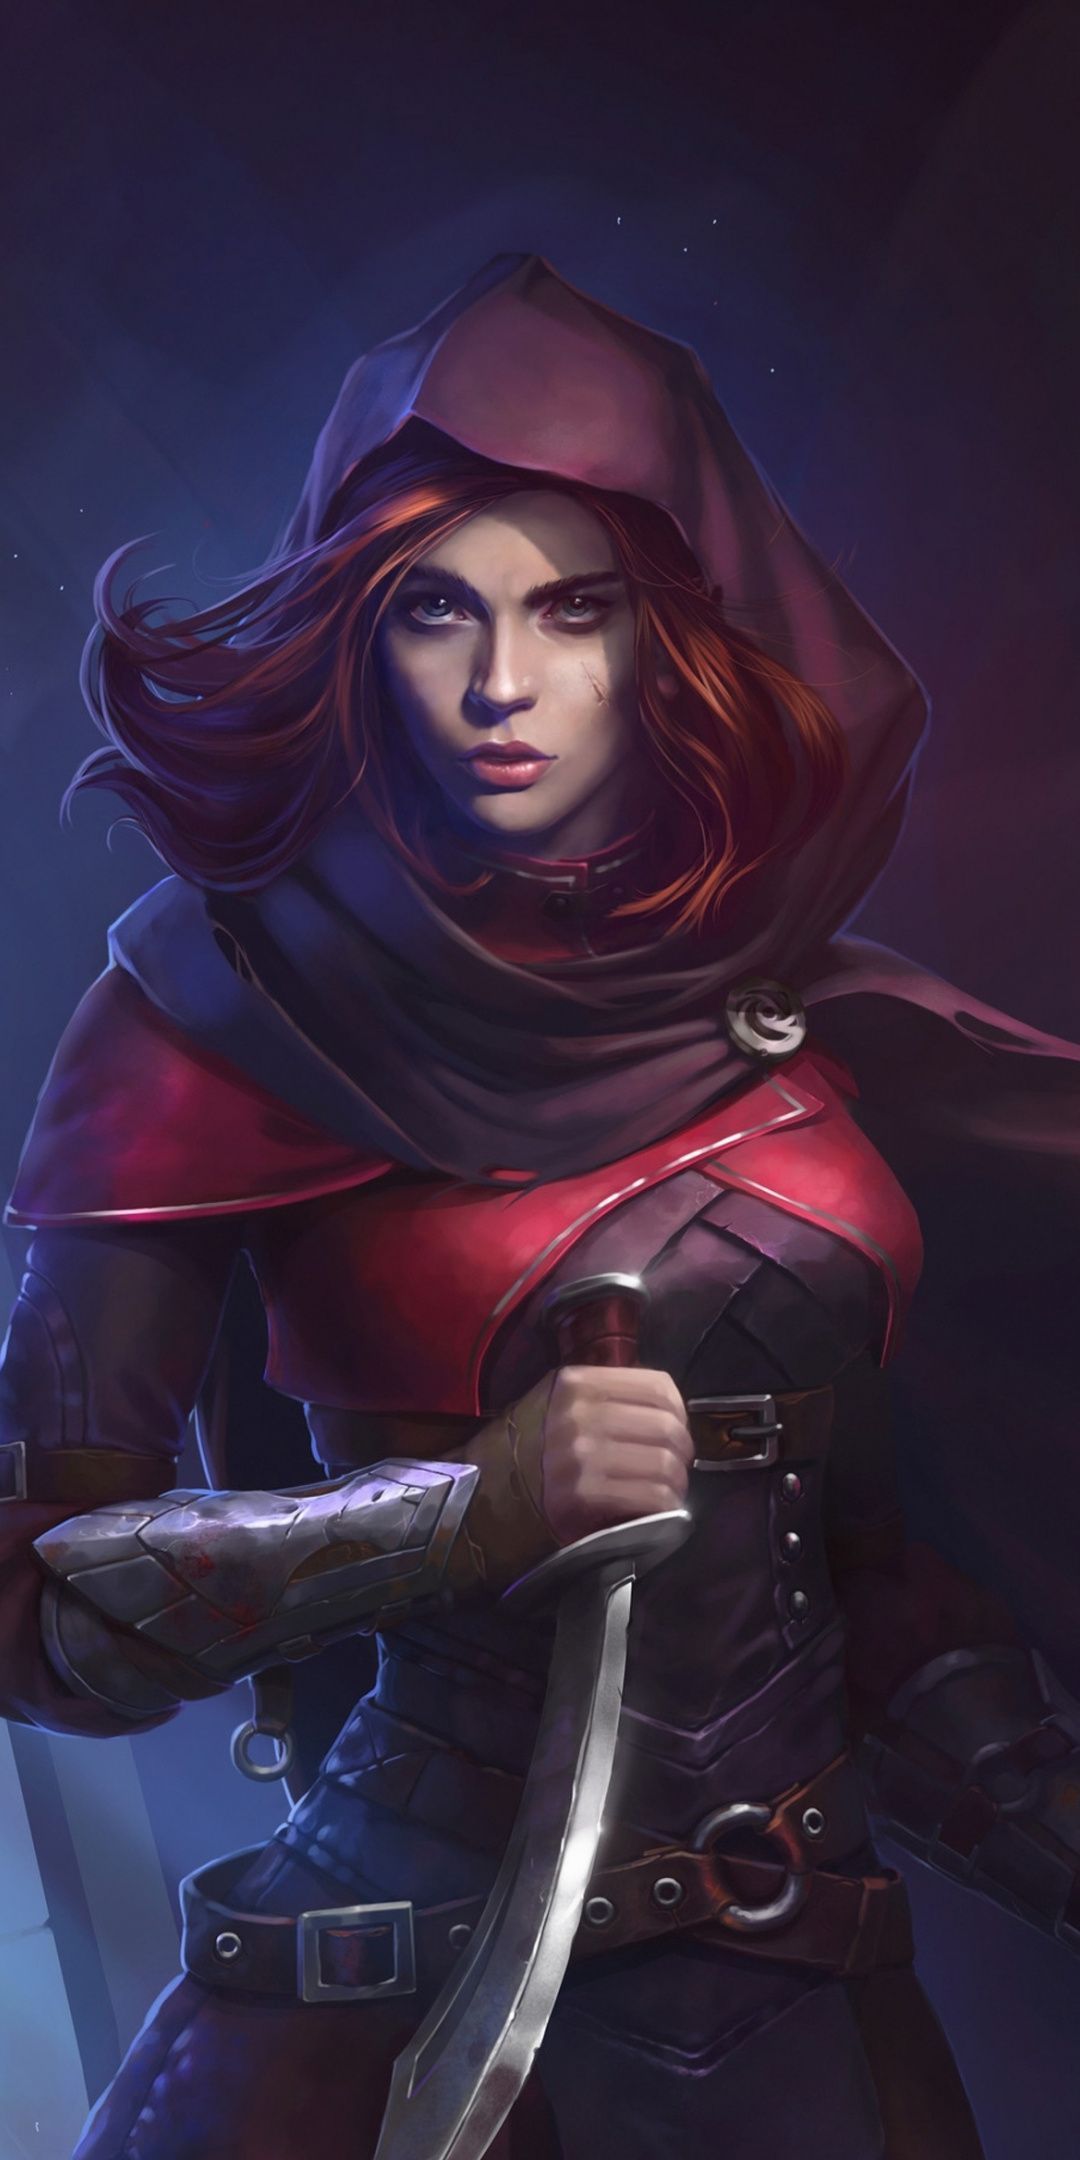 Woman assassin, beautiful, red head, illustration, 1080x2160